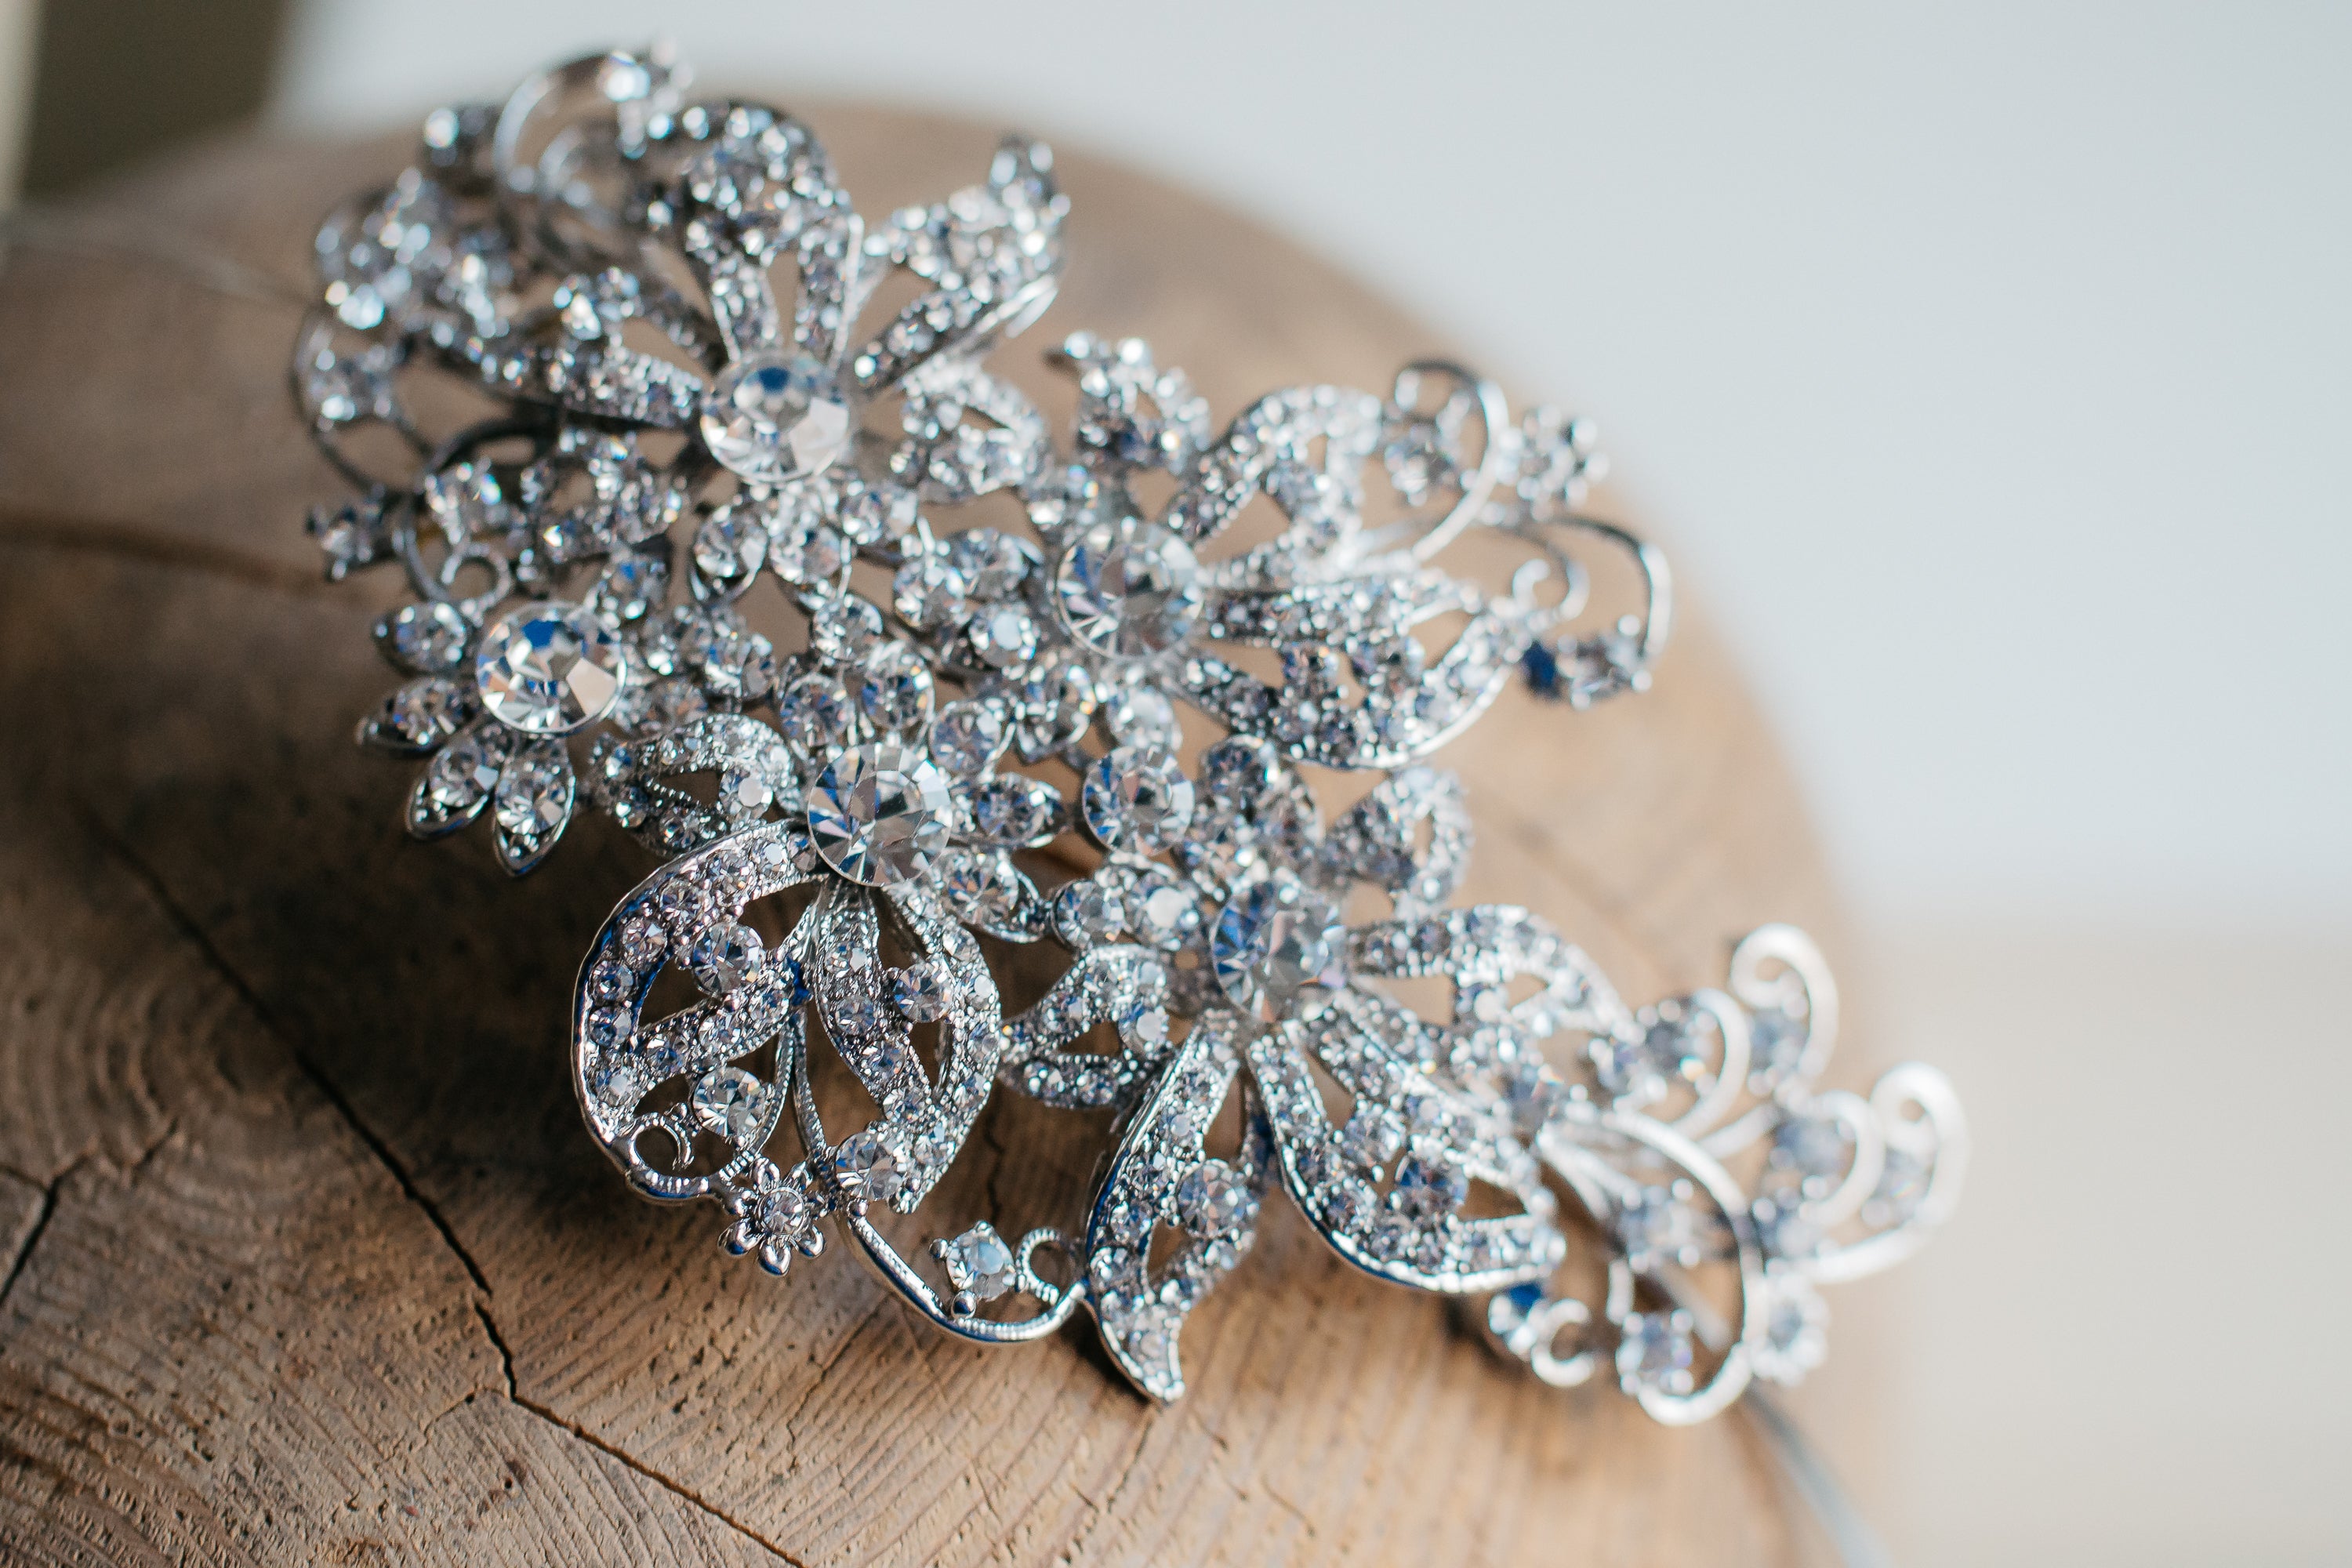 Vintage tyylinen kristalli tiara - Ninka Design